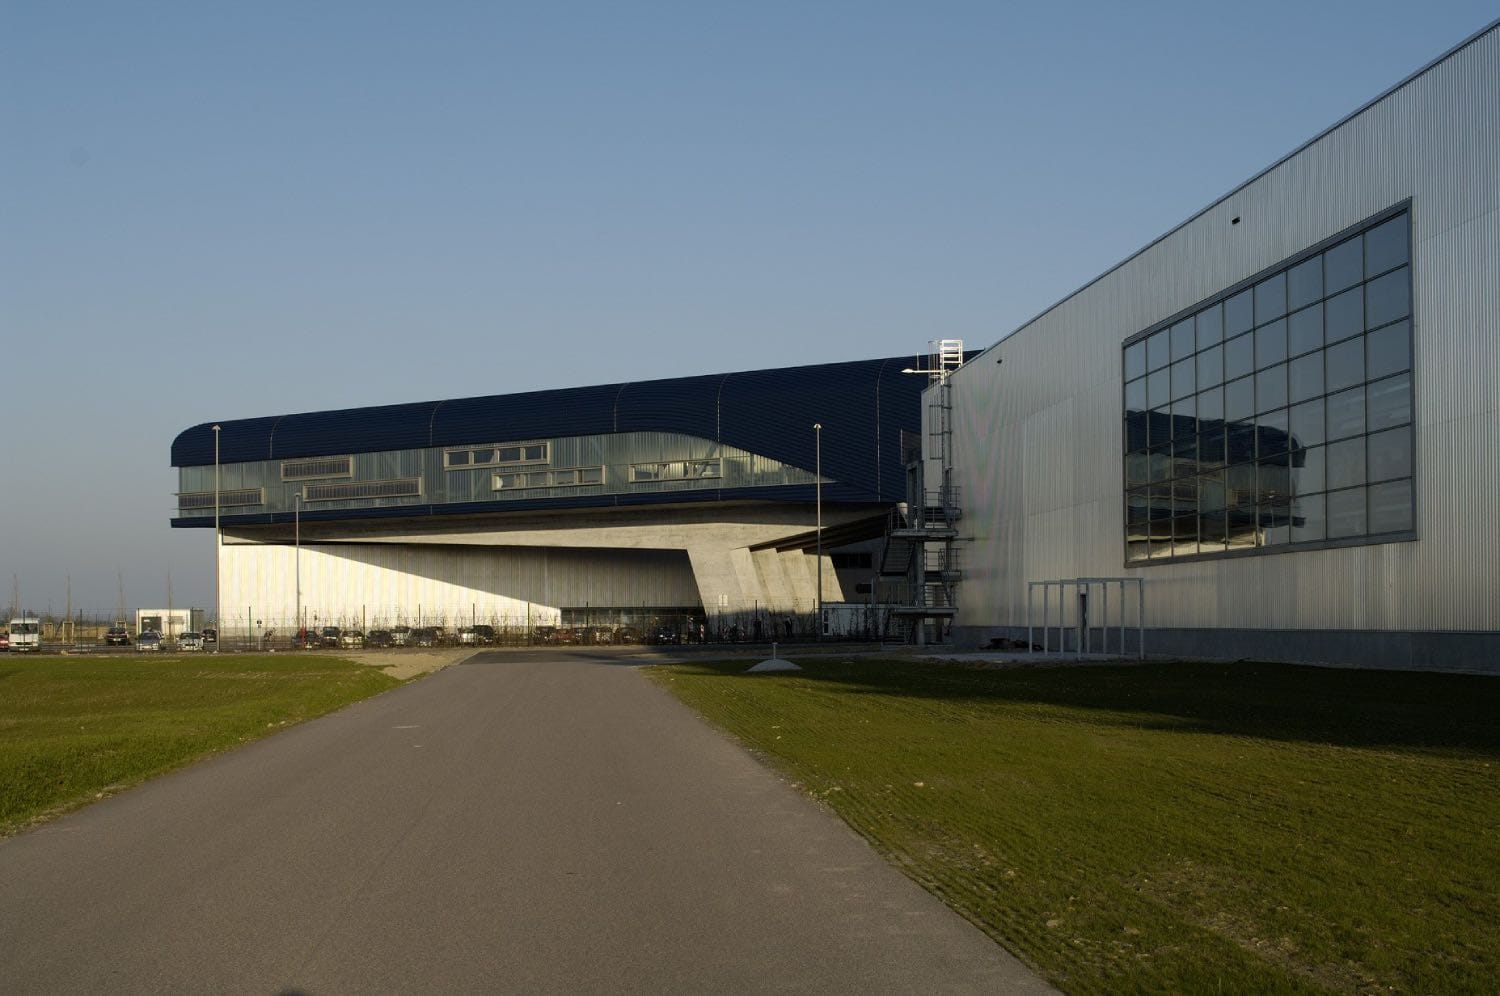 Edificio Central de la Planta de BMW en Lepzig, obra de Zaha Hadid Architects.